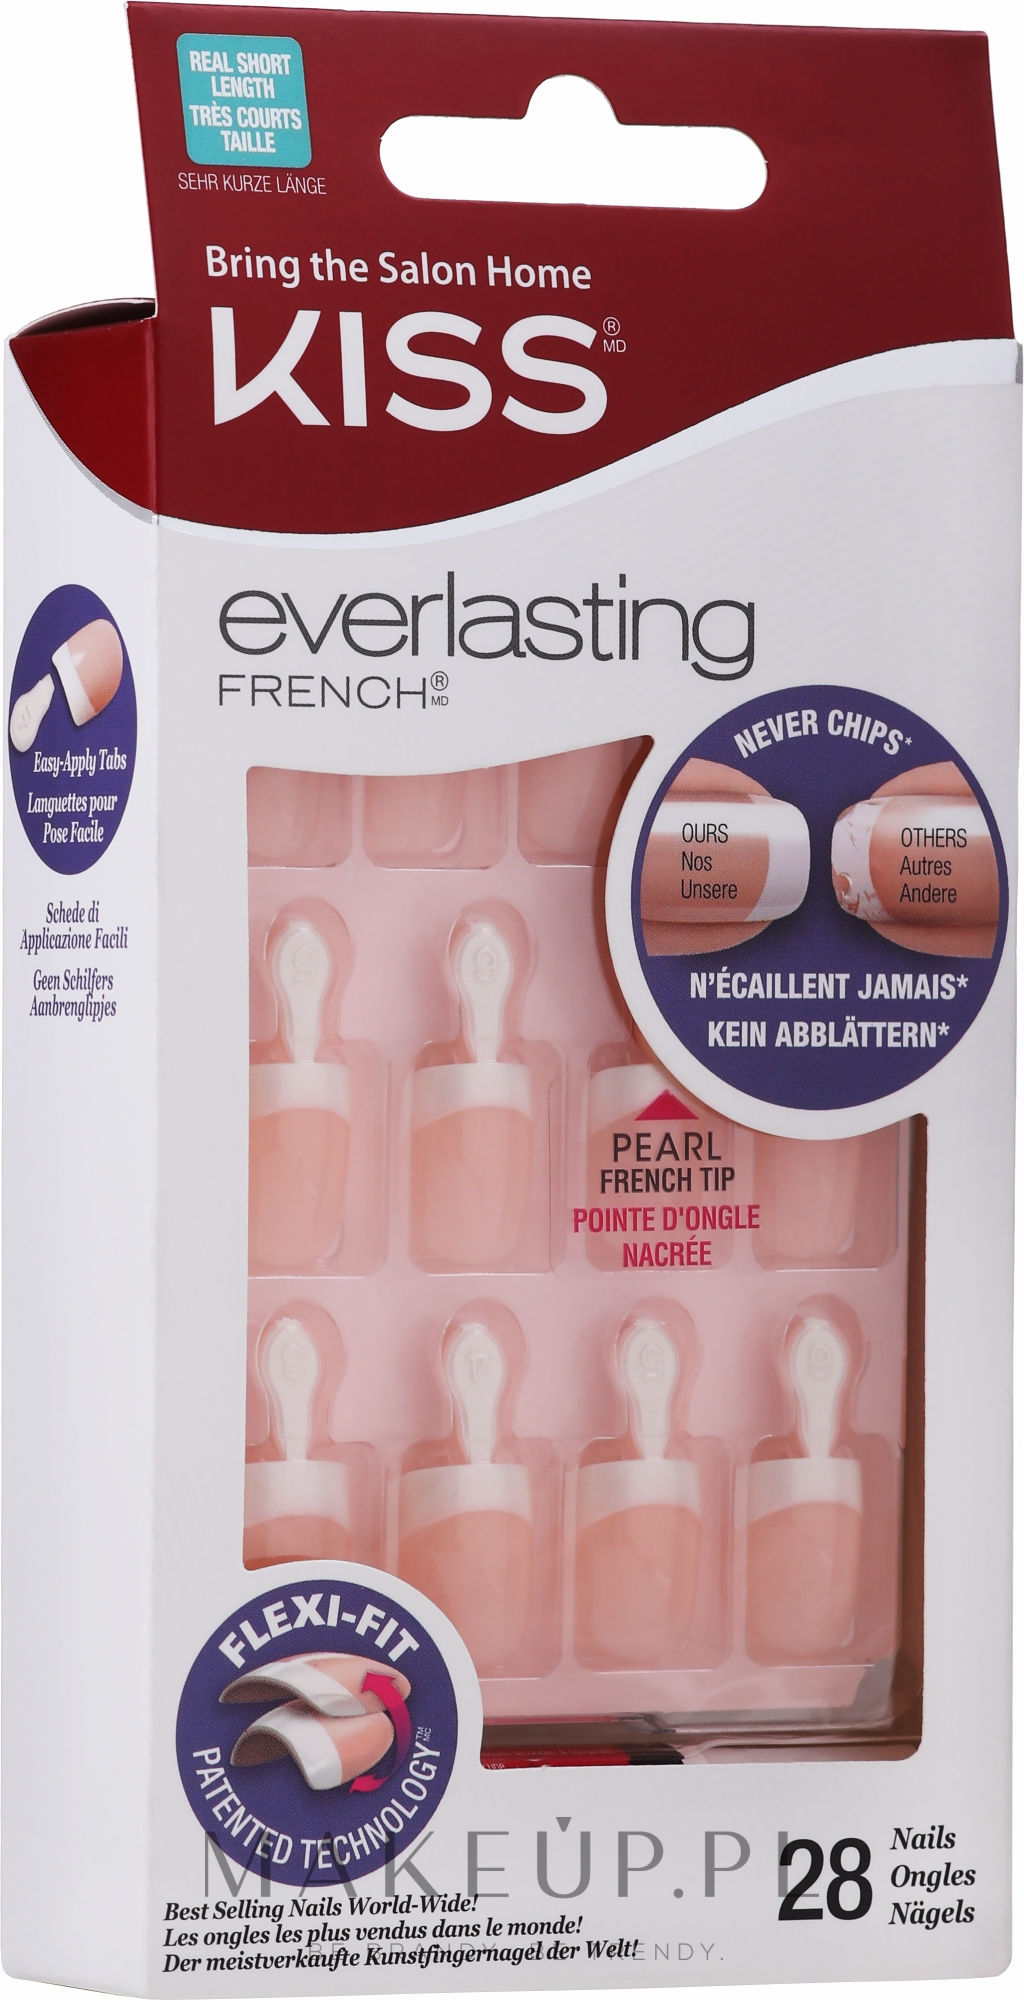 Sztuczne paznokcie Ultratrwały french manicure - Kiss Everlasting French Nail Kit — Zdjęcie 28 szt.